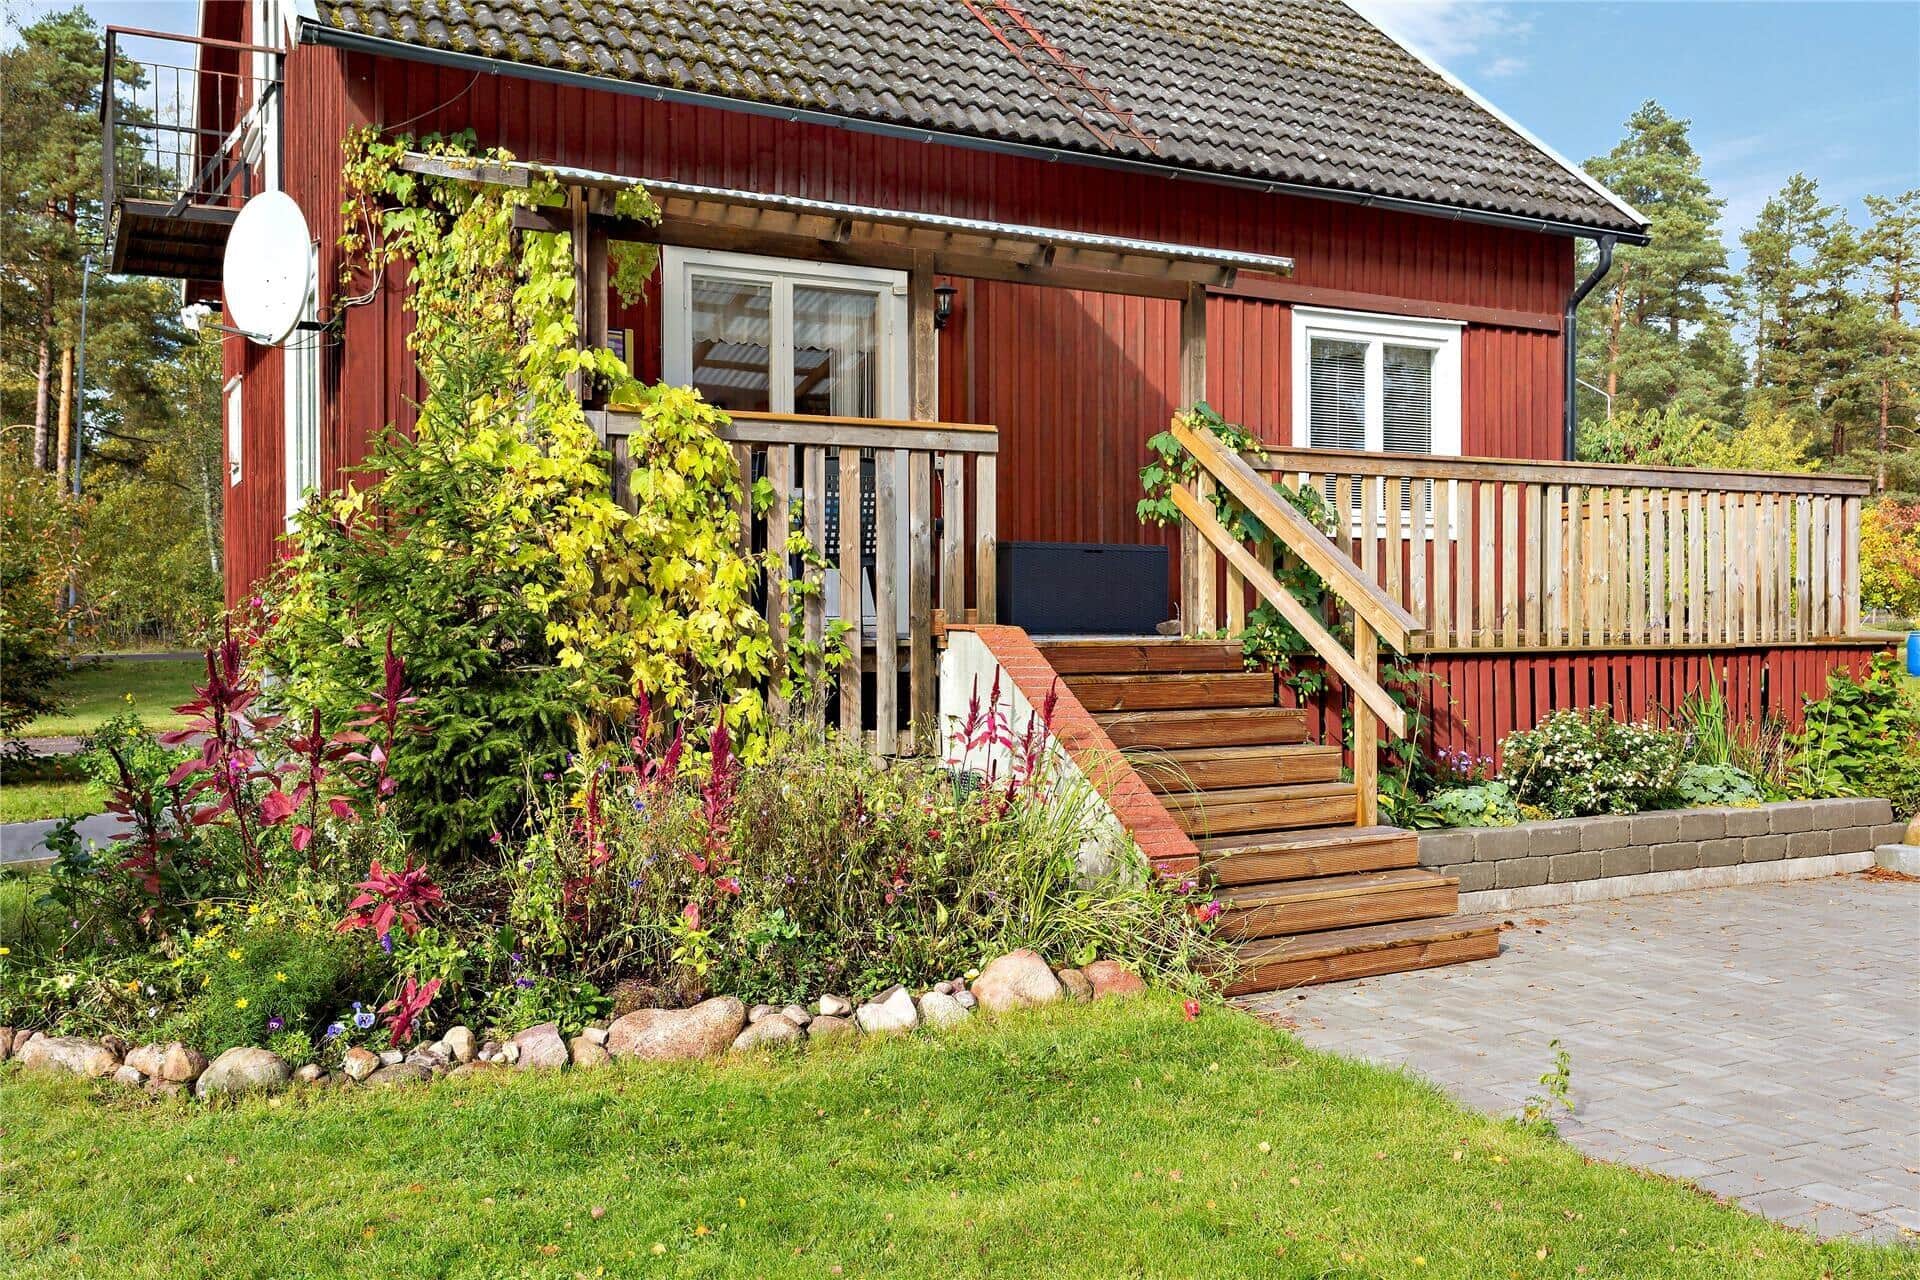 Afbeelding 1-171 Vakantiehuis KAL467, Södra Måleråsvägen 41, DK - 382 76 Målerås